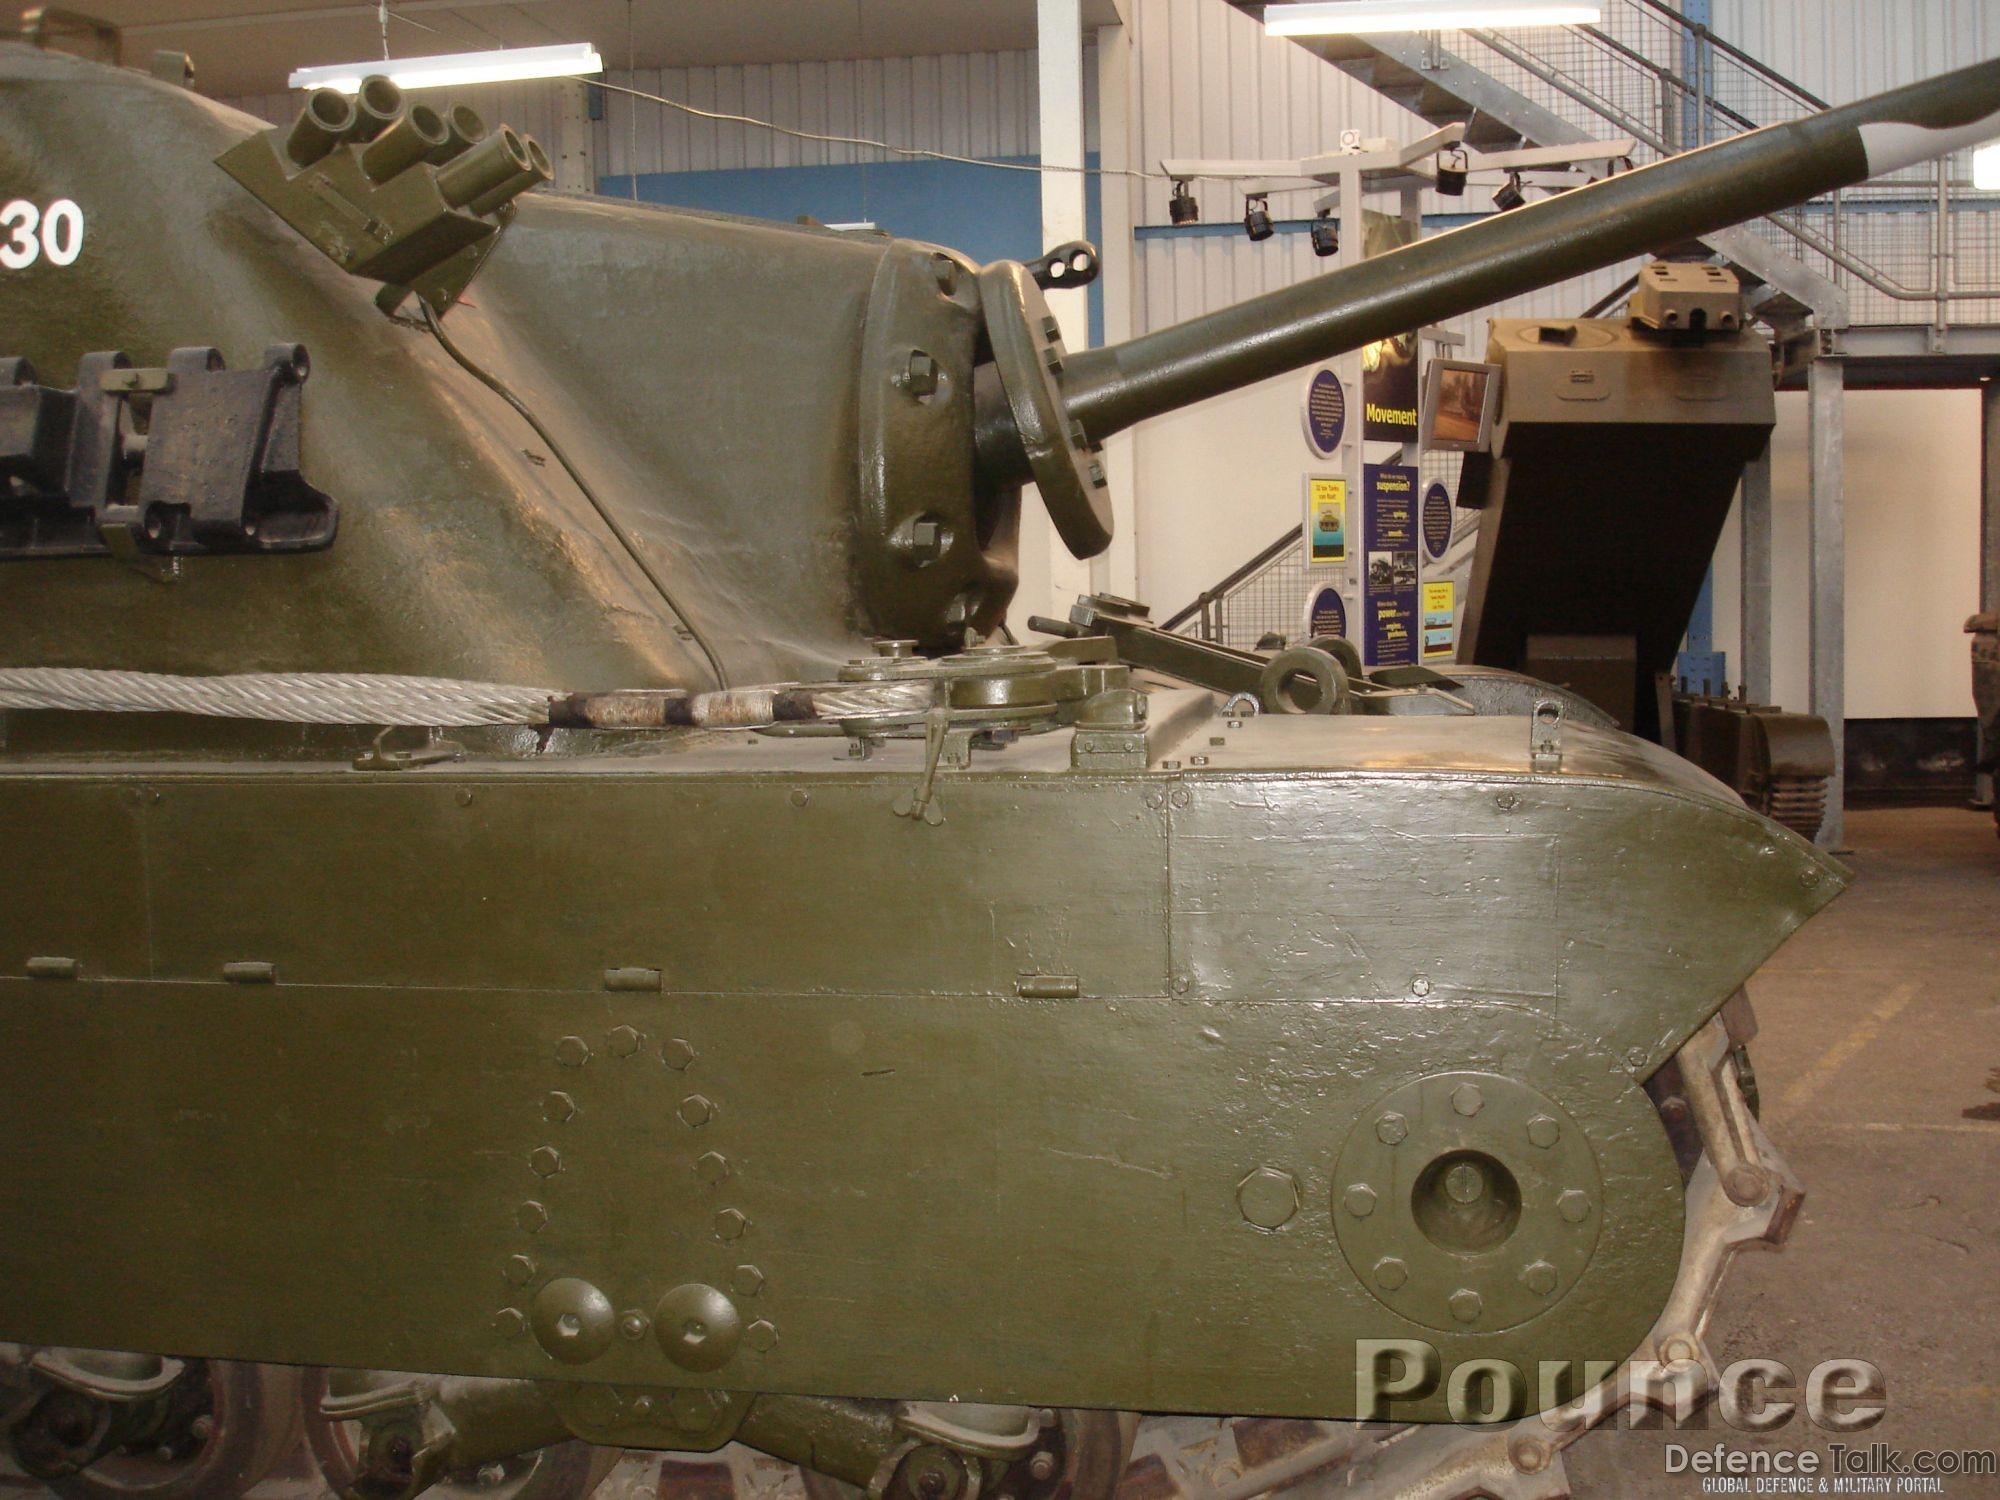 Tortoise heavy assault tank